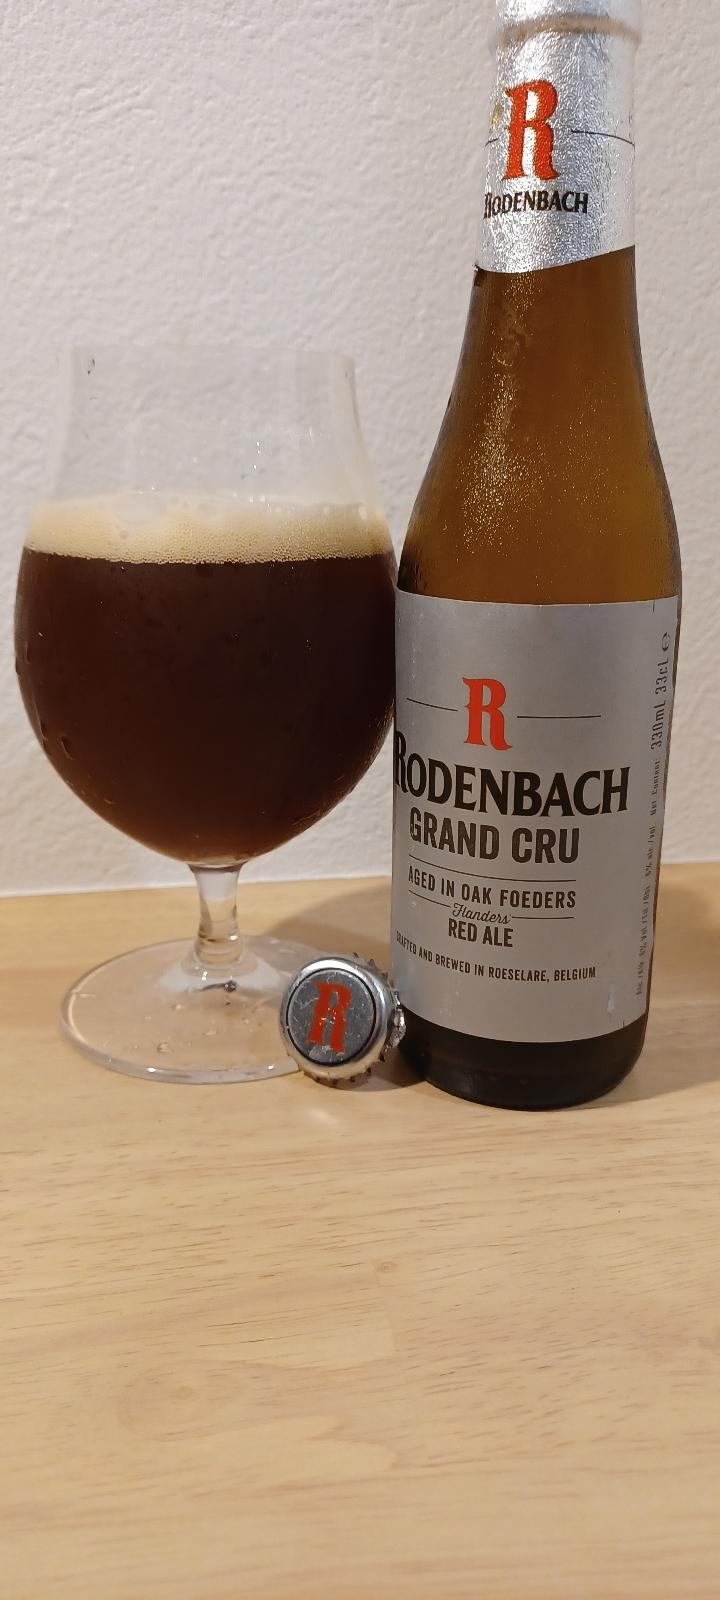 Robenbach Grand Cru (Oak Foeder Aged)